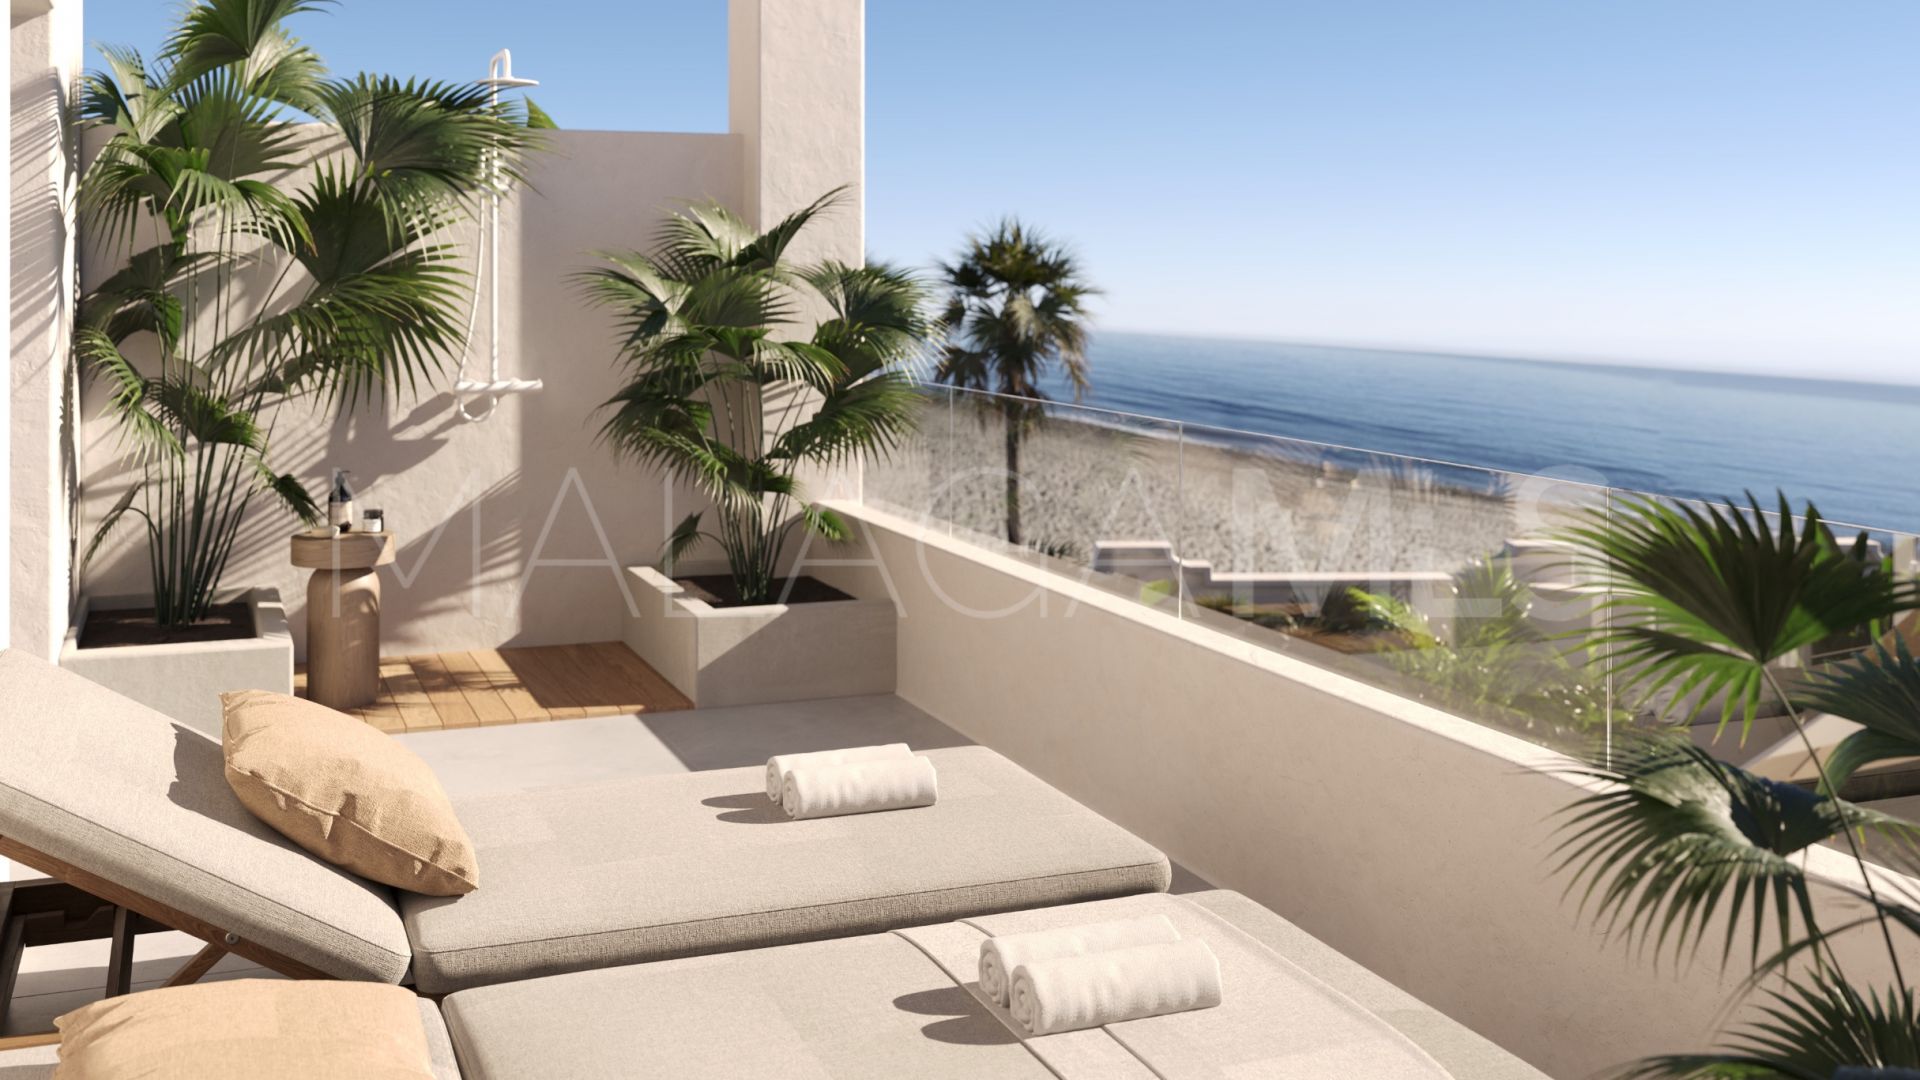 Adosado de 3 bedrooms for sale in Marbella Este